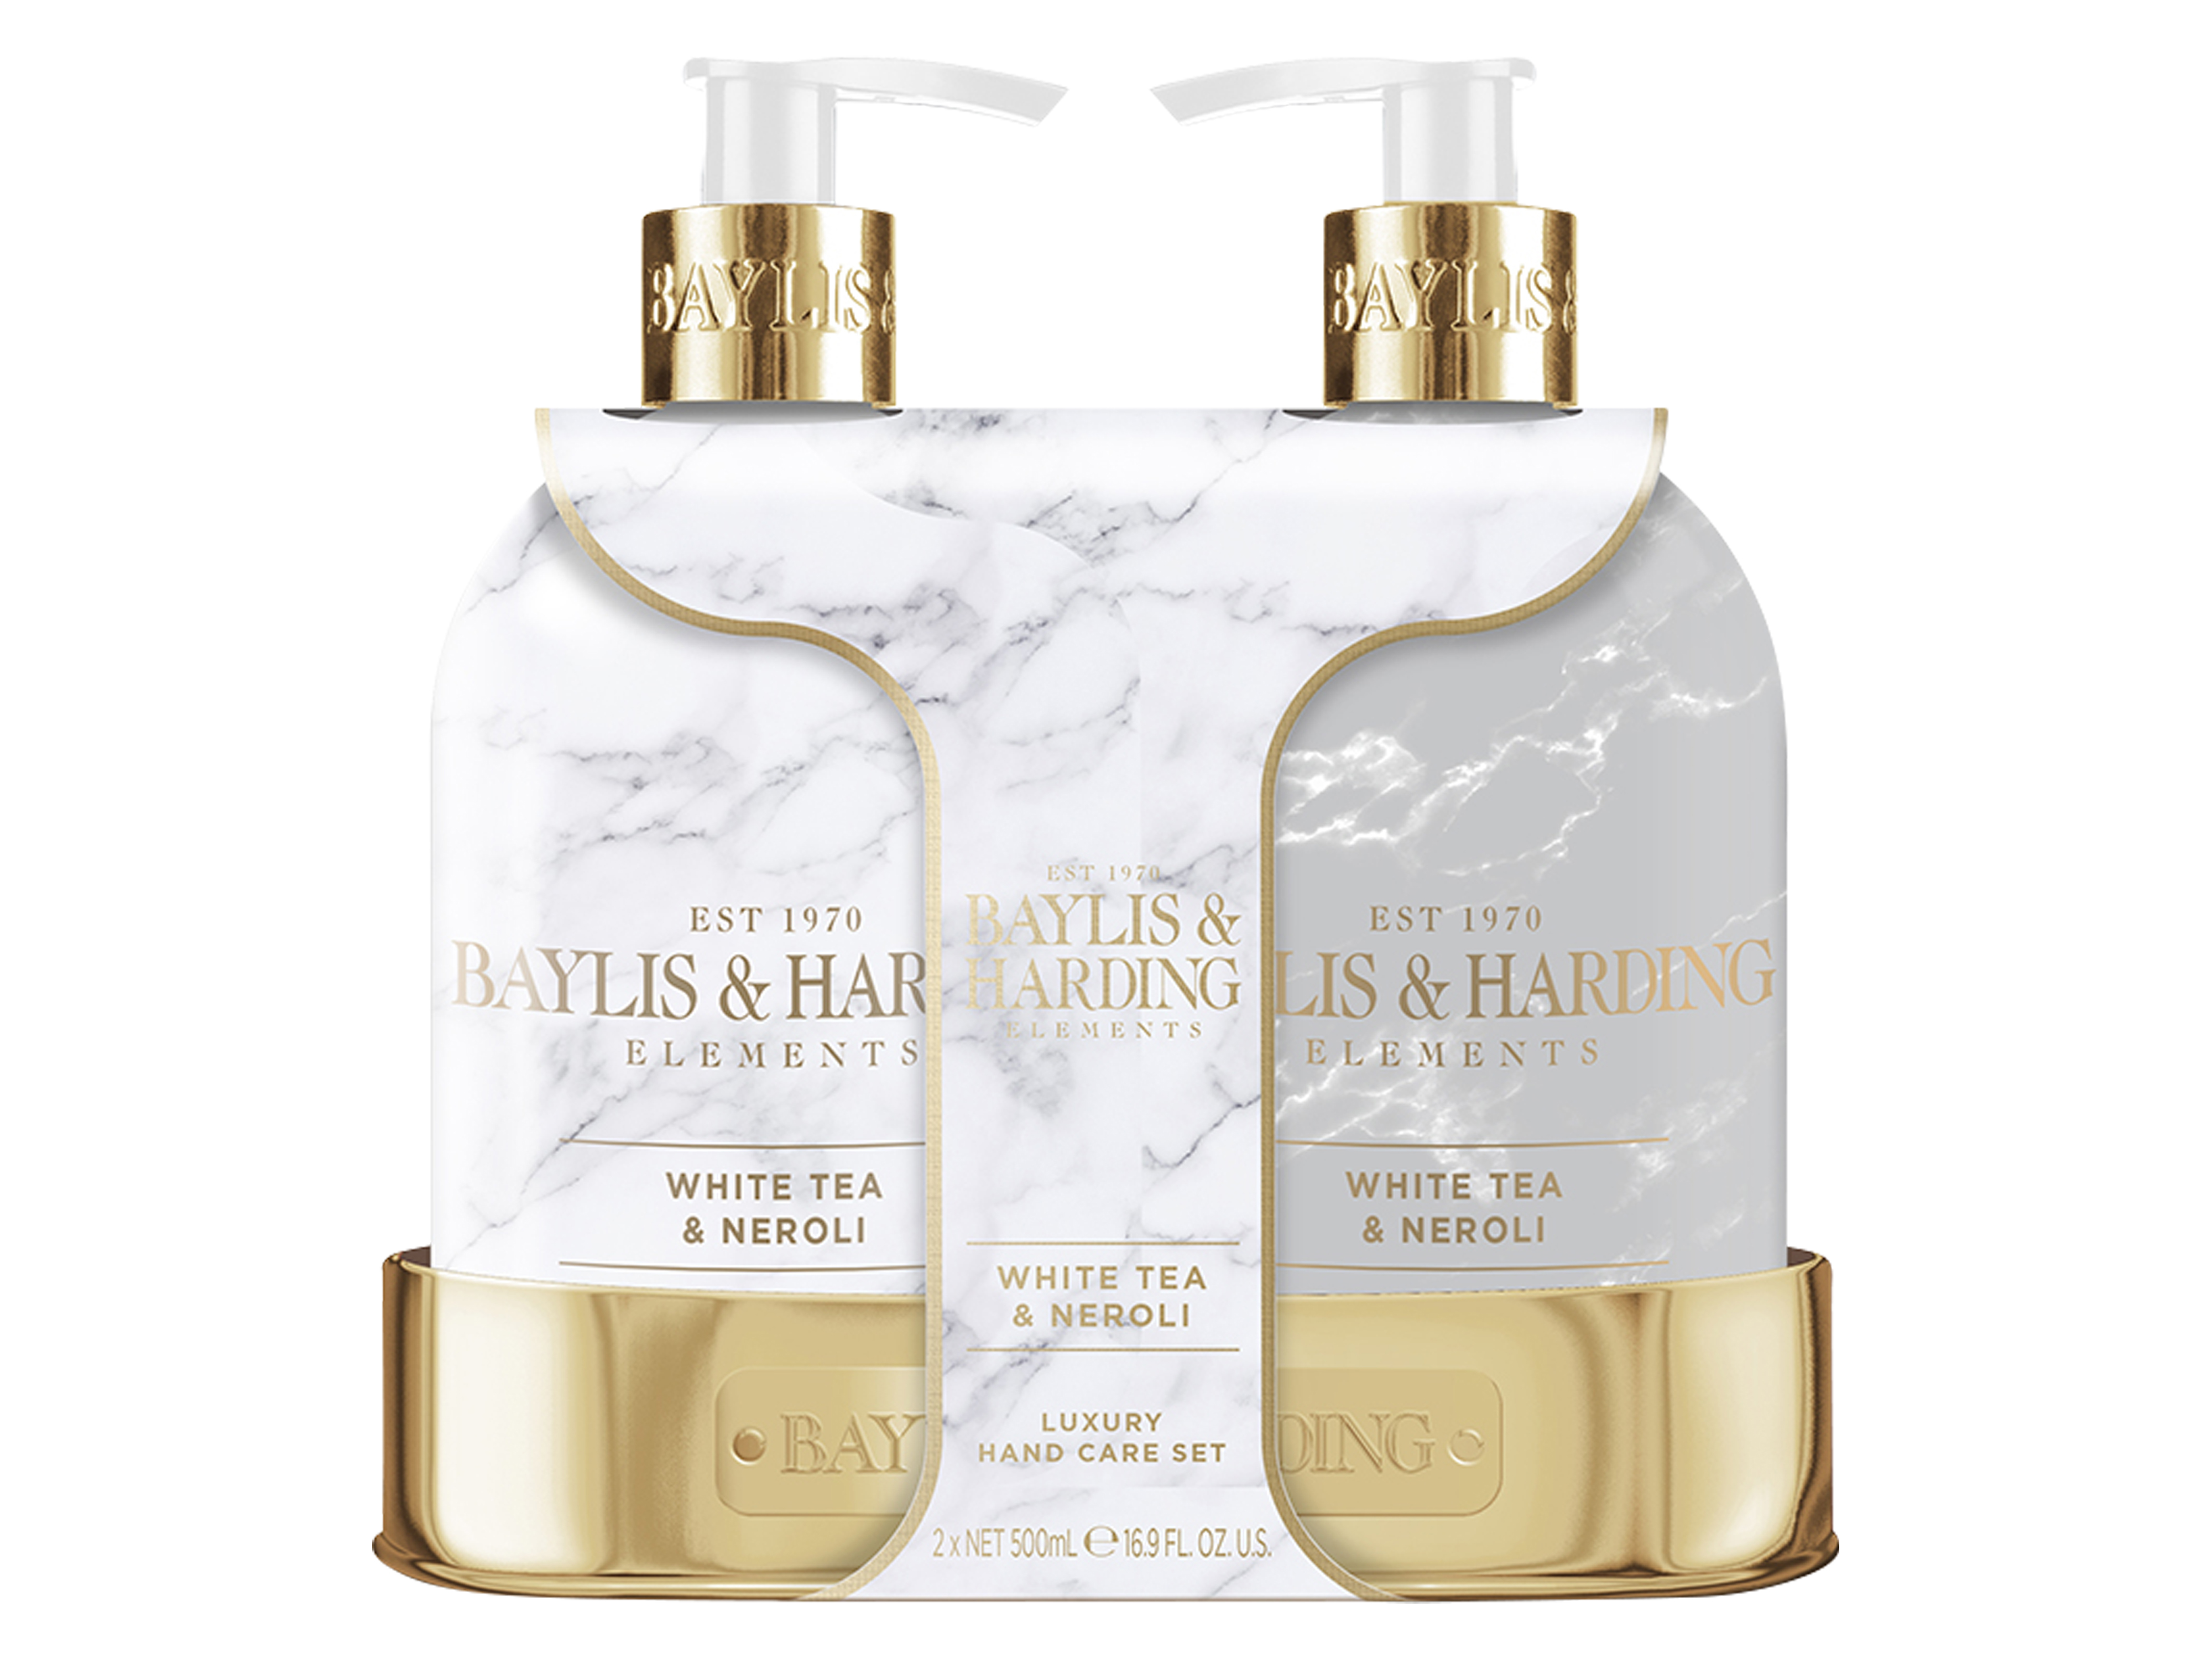 Baylis & Harding Elements Luxury 2 Bottle Hand Care Set, 1 sett